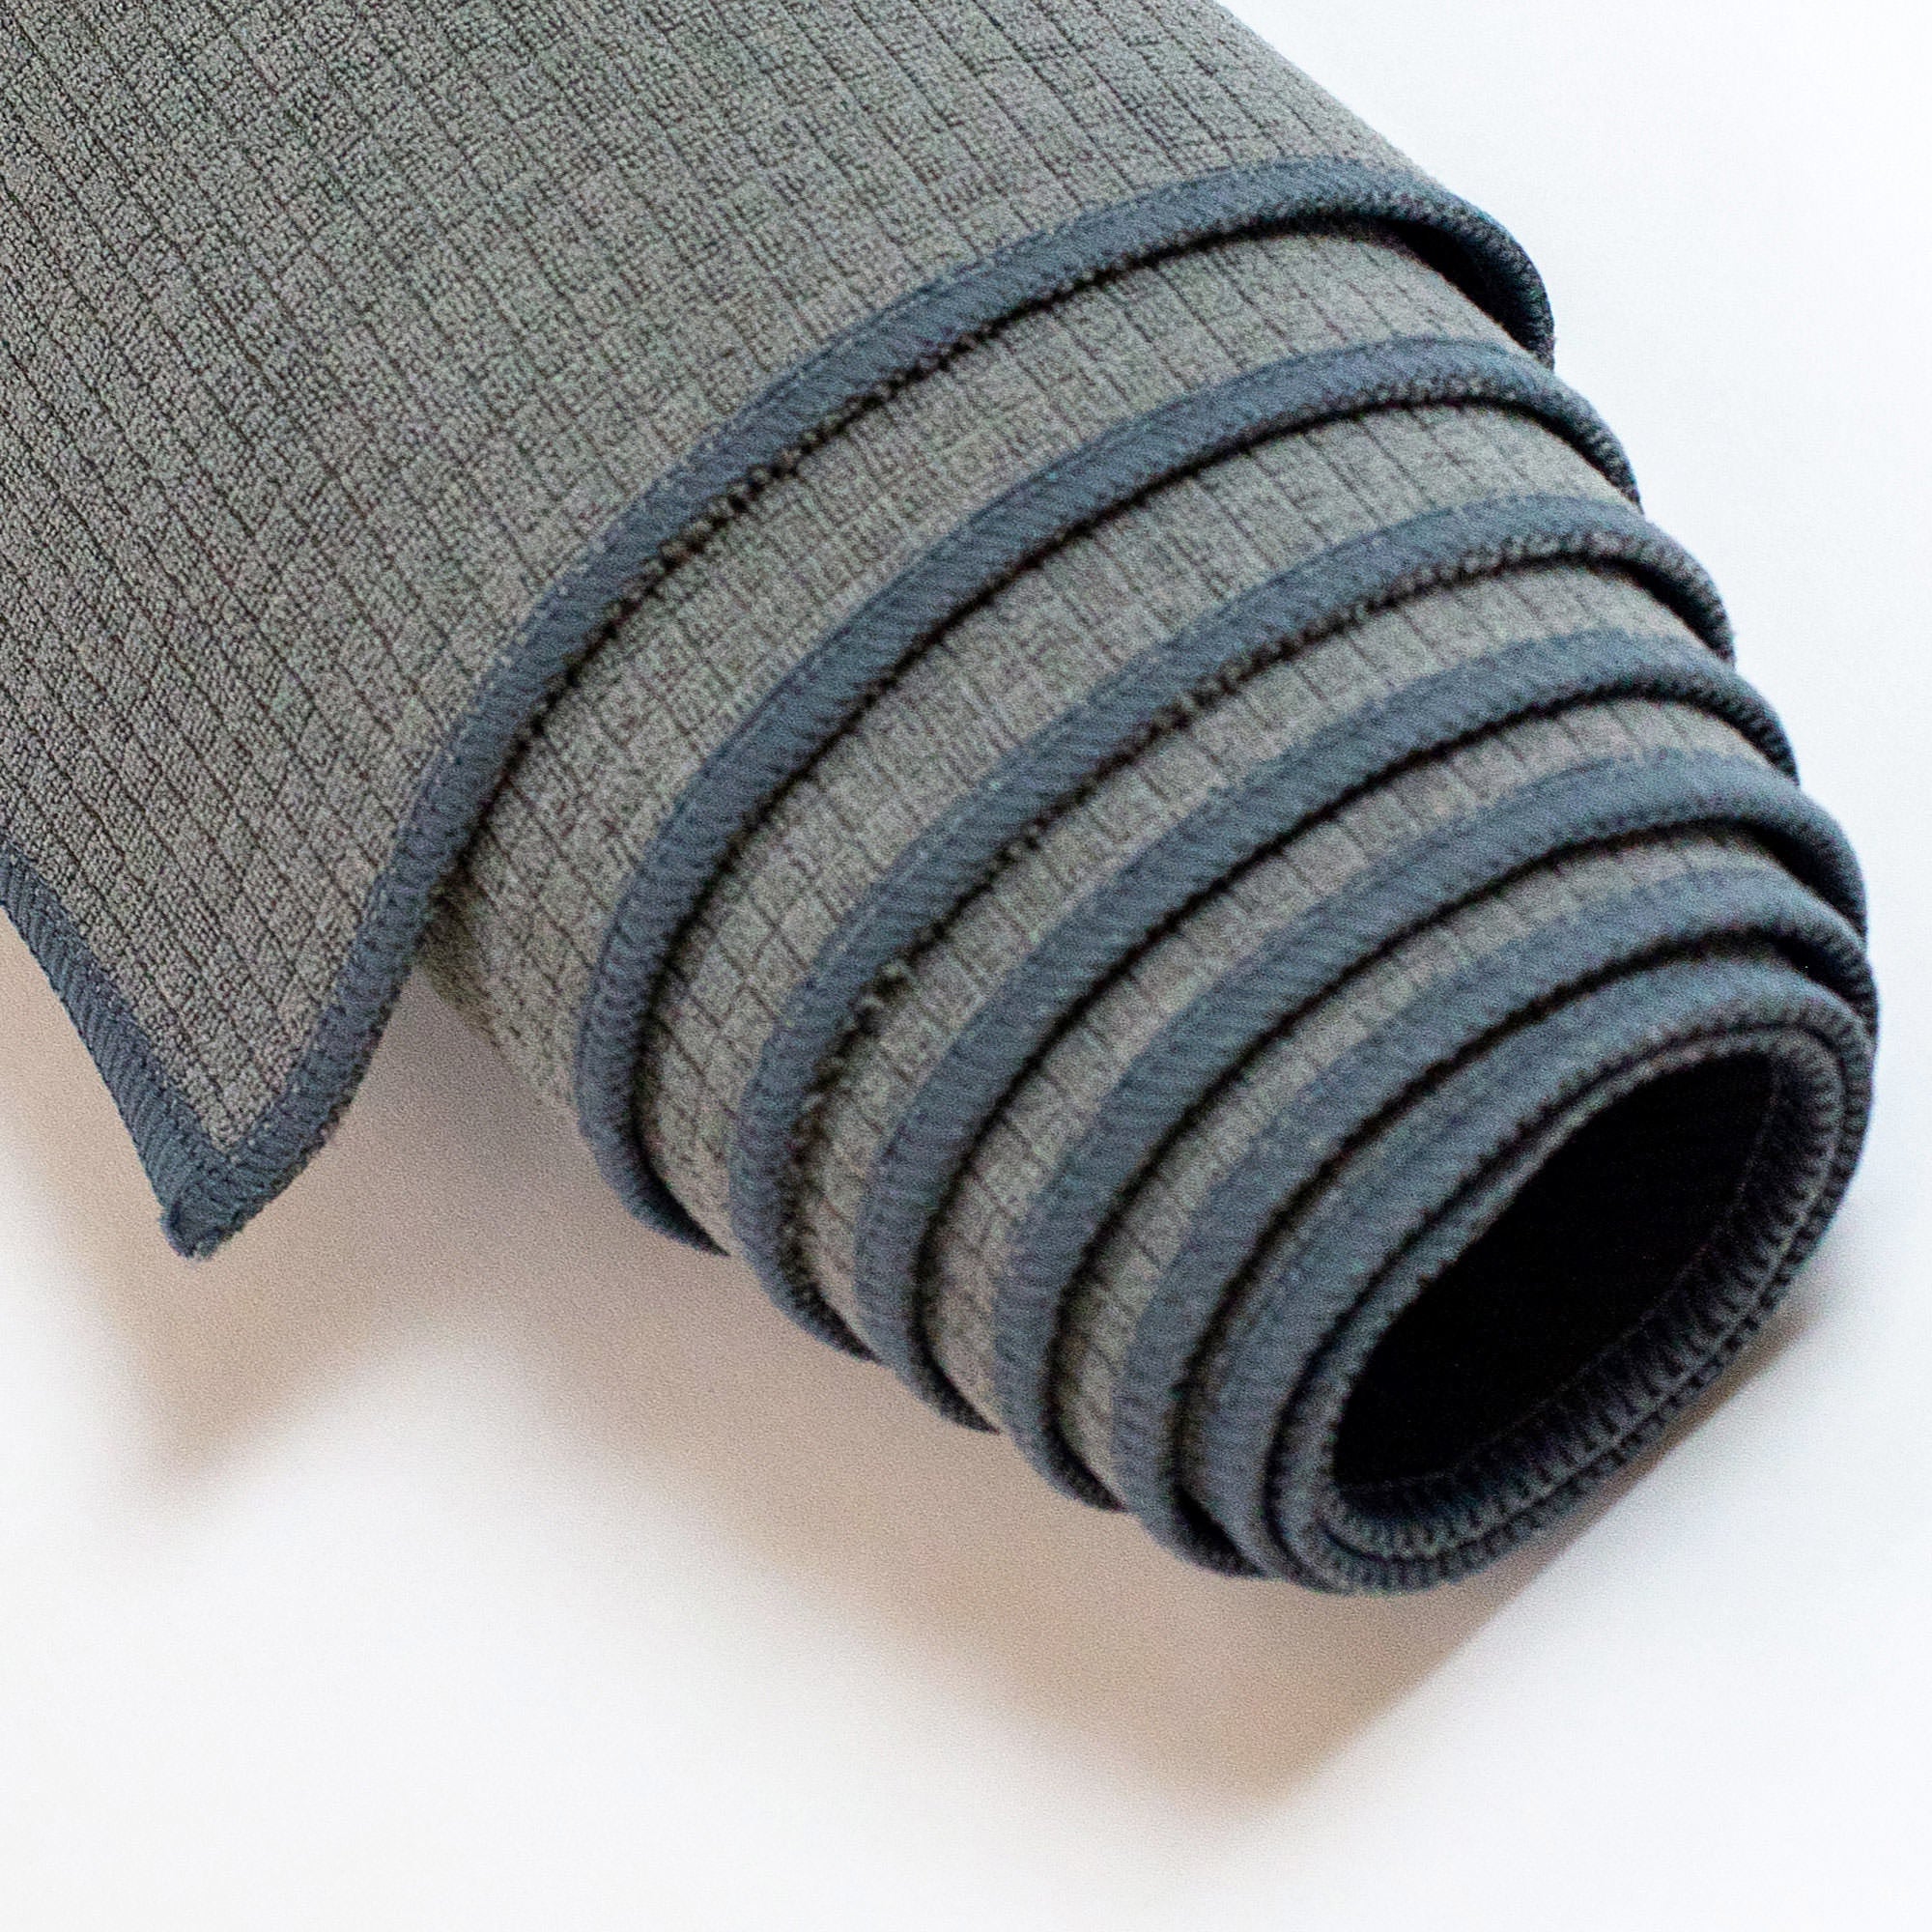 Non-Slip Pilates Reformer Towel  Blue 30.5  x 23 – Salt & Honey